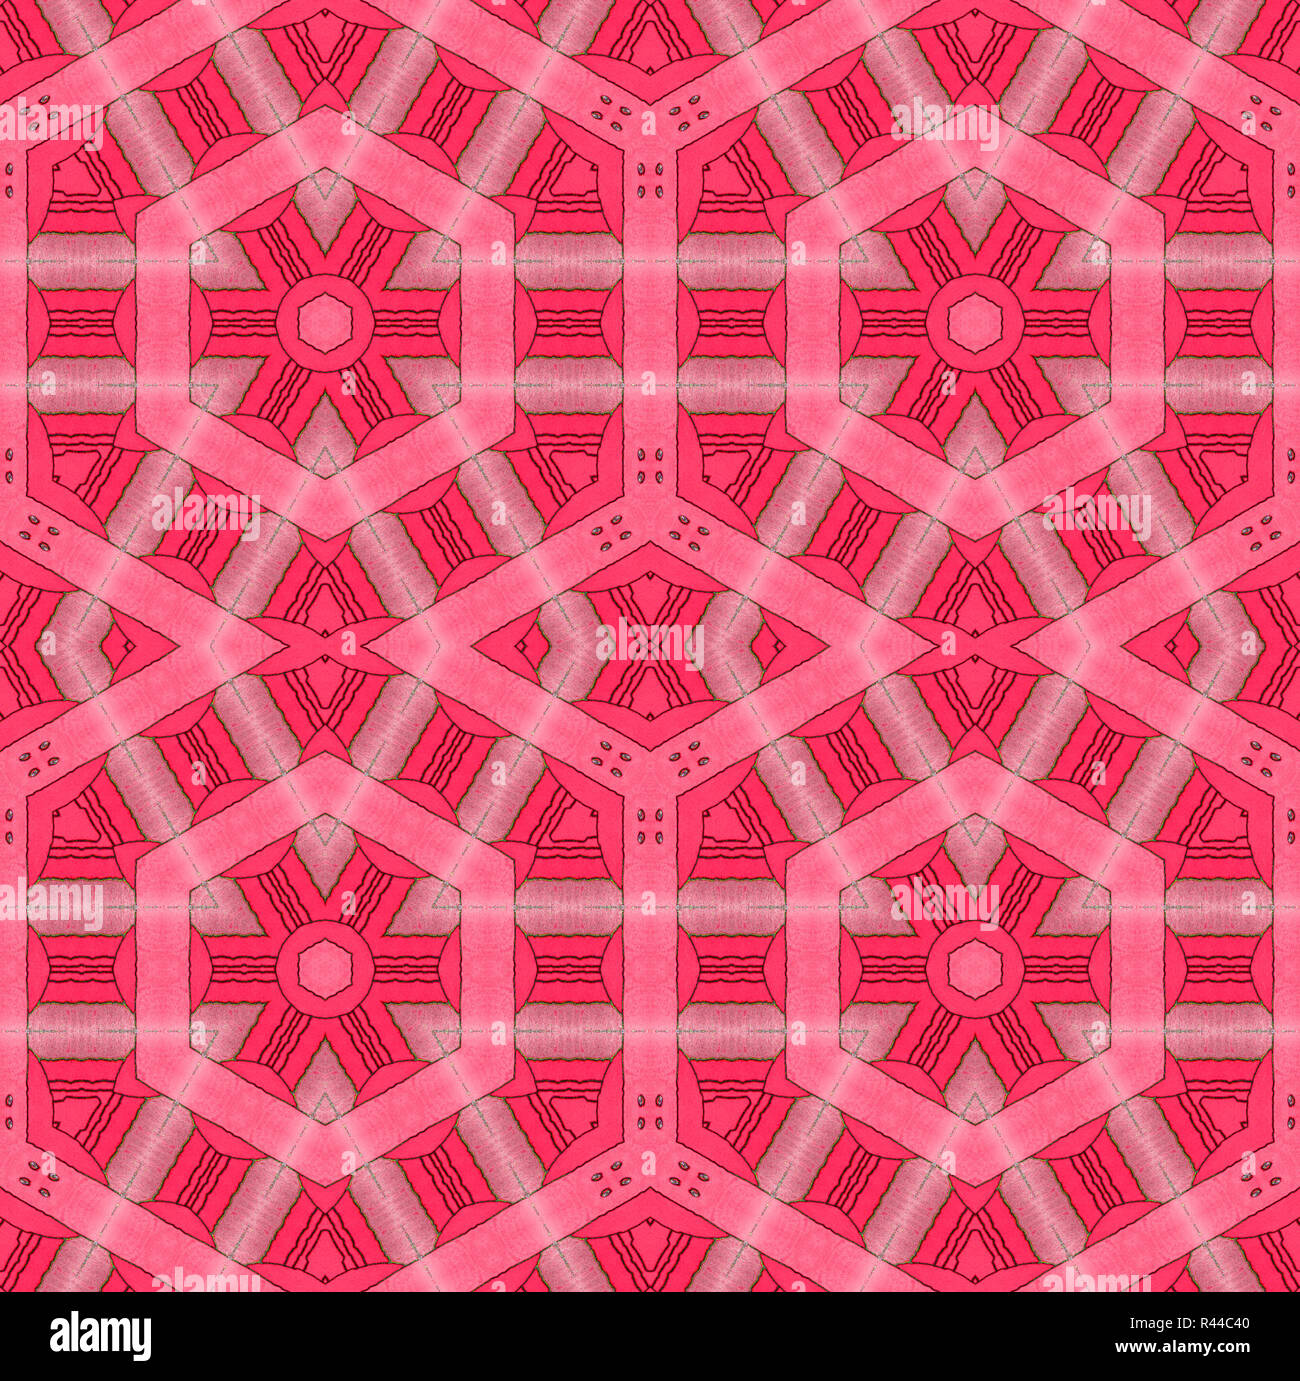 Moderno abstracto geométrico, fondo hexagonal perfecta y patrón romboidal en rosa pastel y tonos rojos, dibujo Foto de stock